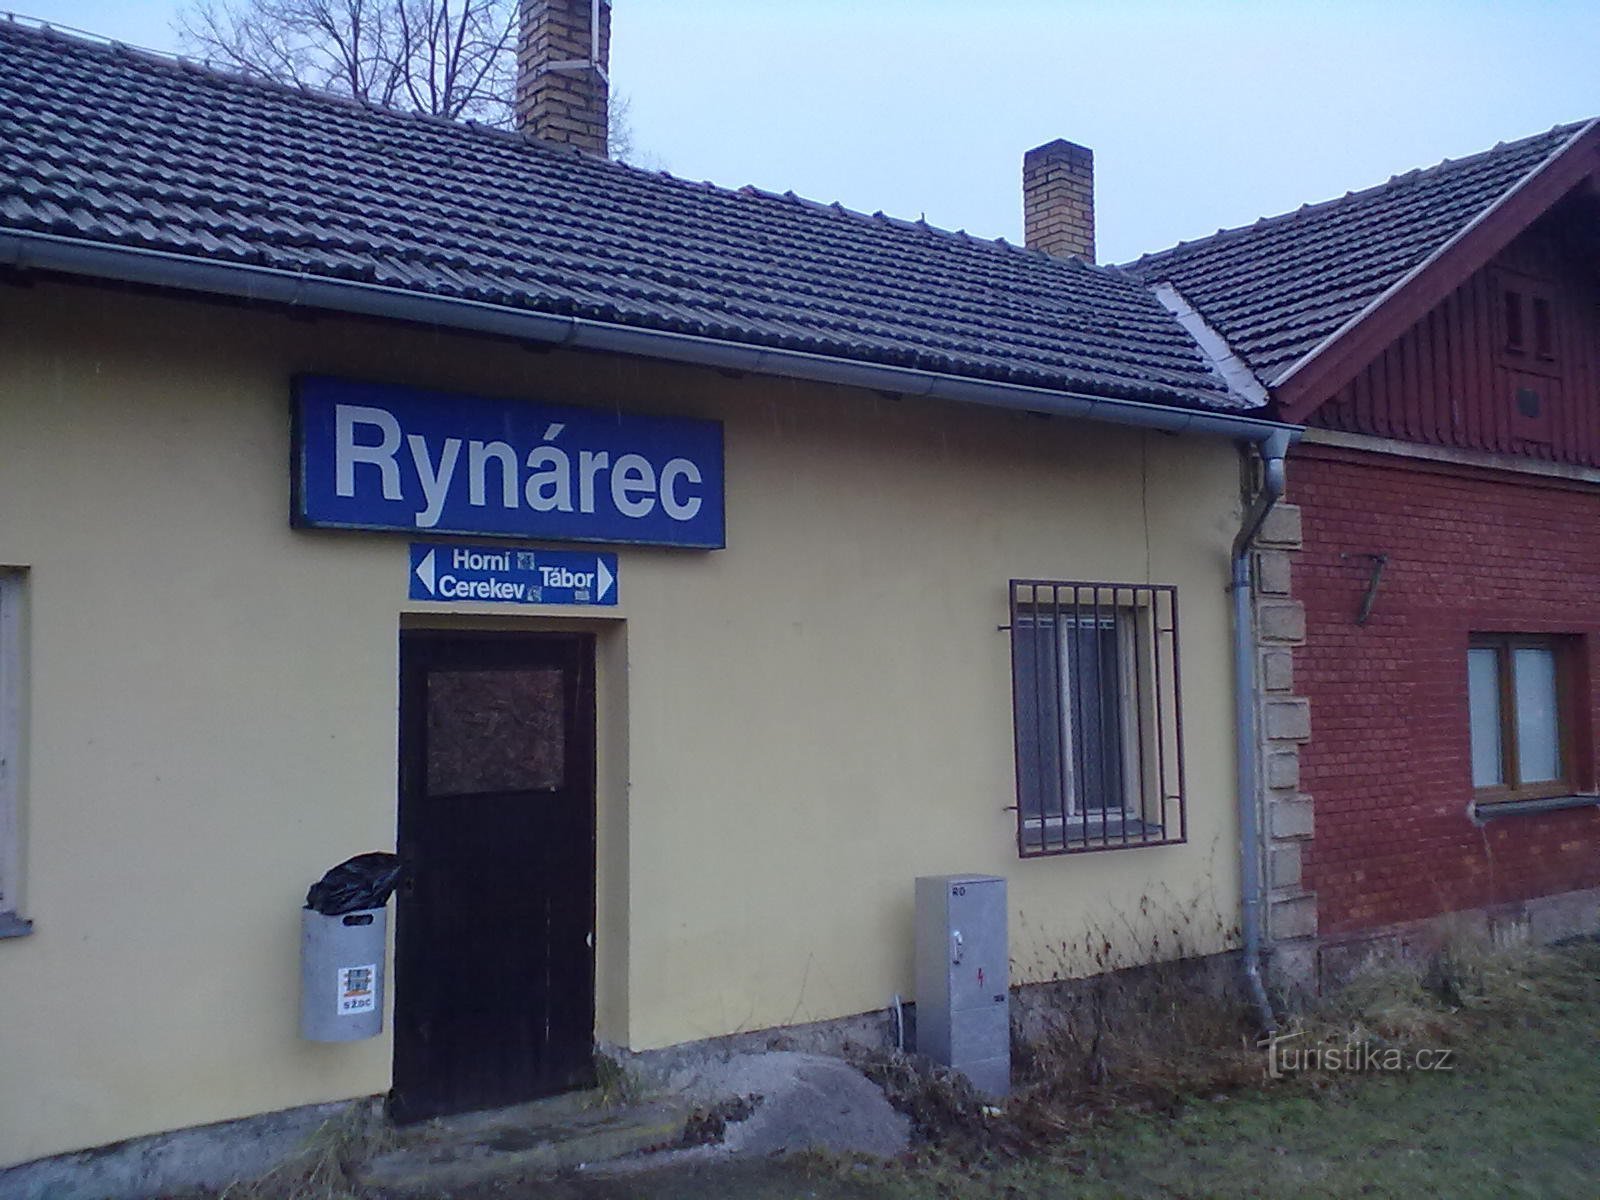 Khởi đầu của cuộc hành trình. Dừng lại ở Rynárec, ngay bên ngoài Pelhřimov. Trời đã mưa mạnh từ sáng.